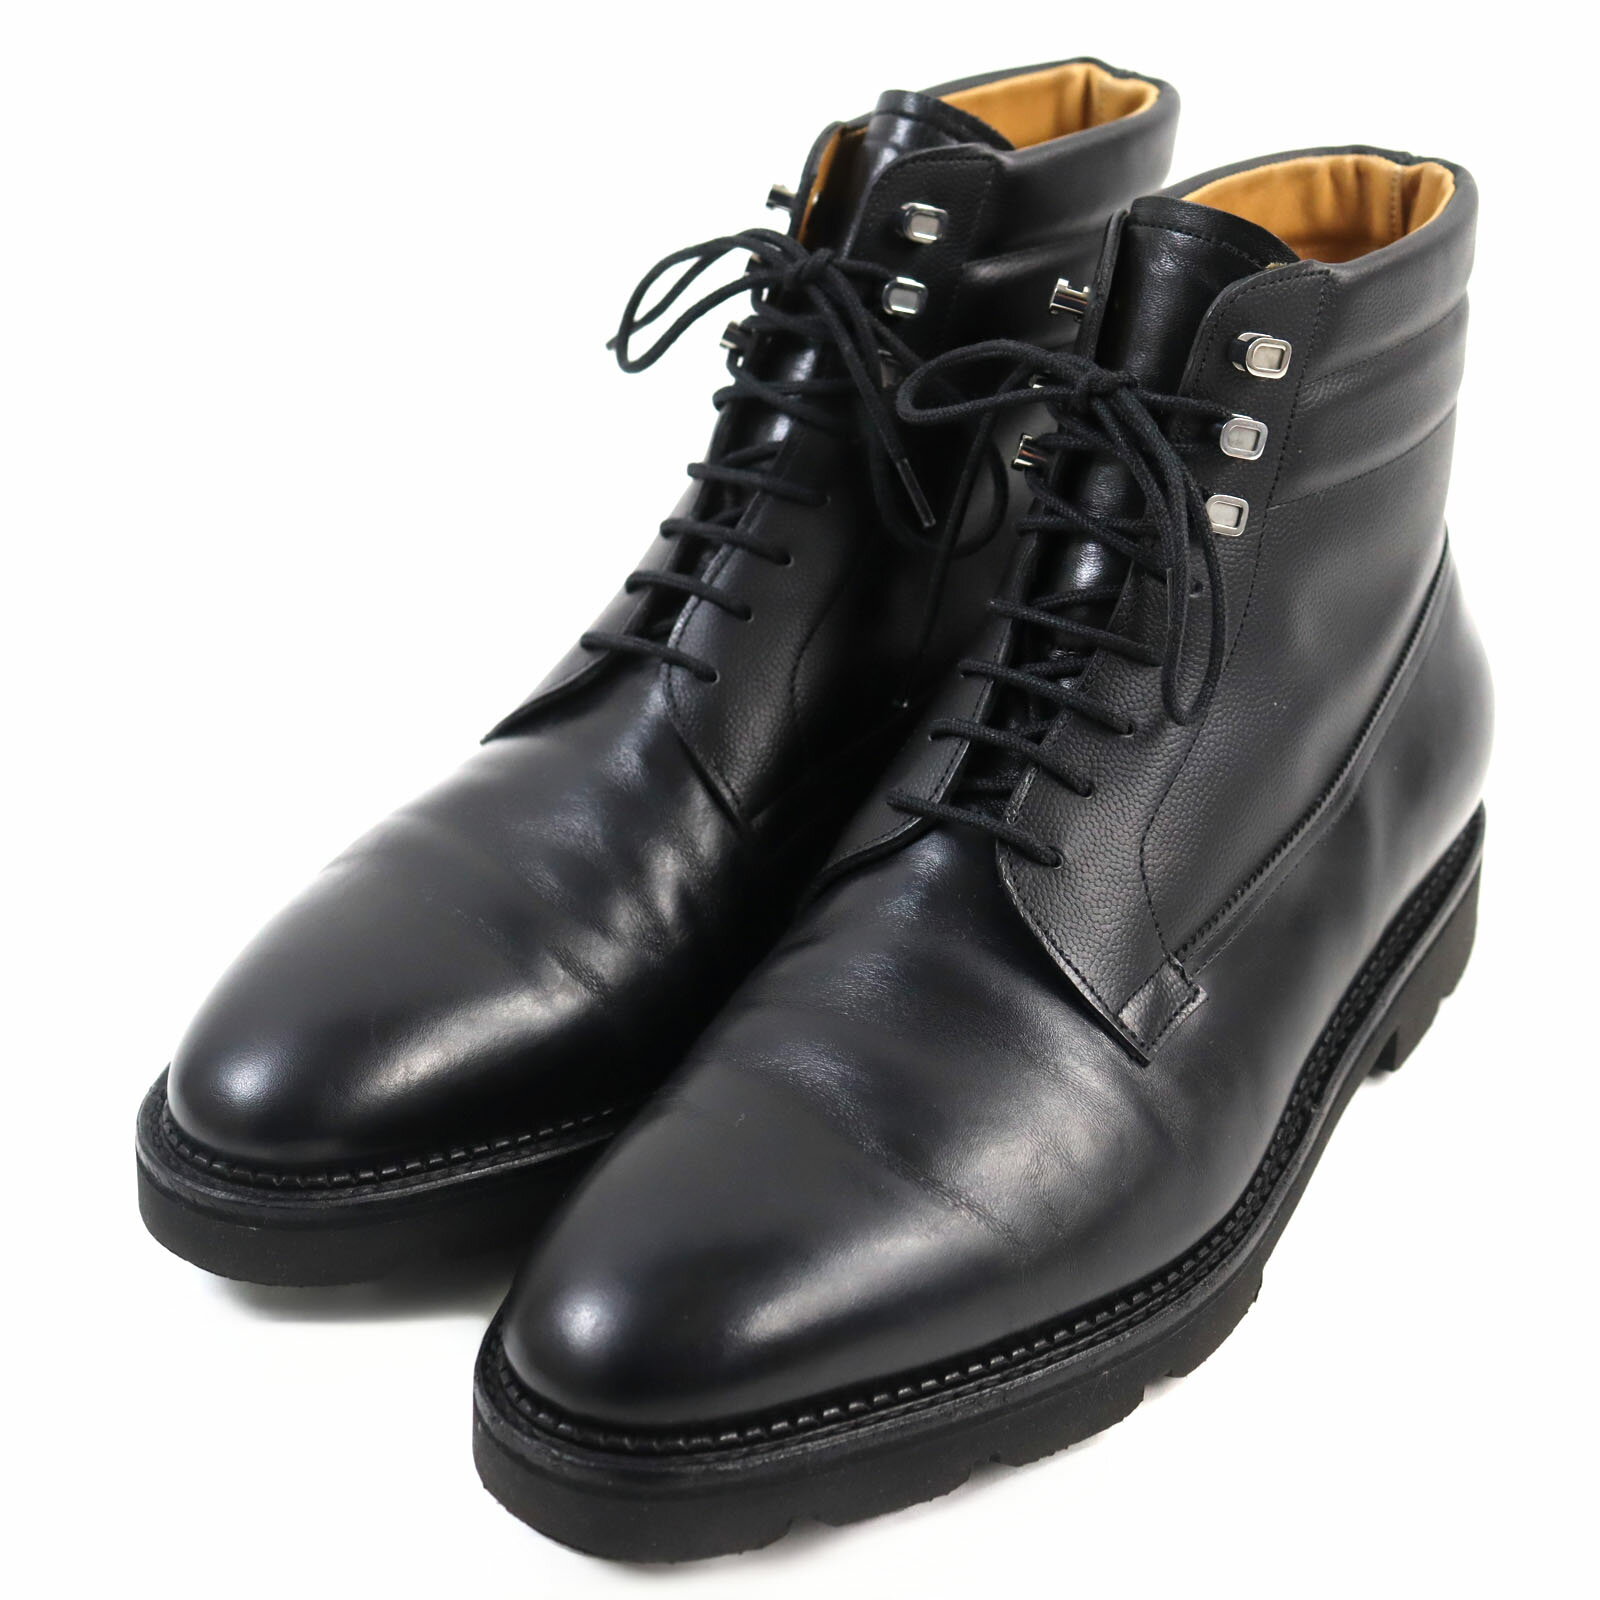 ブーツ メンズ 靴 黒 ブラック ブラウン スノーブーツ ショートブーツ 防水 防滑 滑らない 防寒 暖かい 保温材 抗菌 冬 雪 雨 厚底 シンプル かっこいい クリフメイヤー KRIFF MAYER KRI-9885